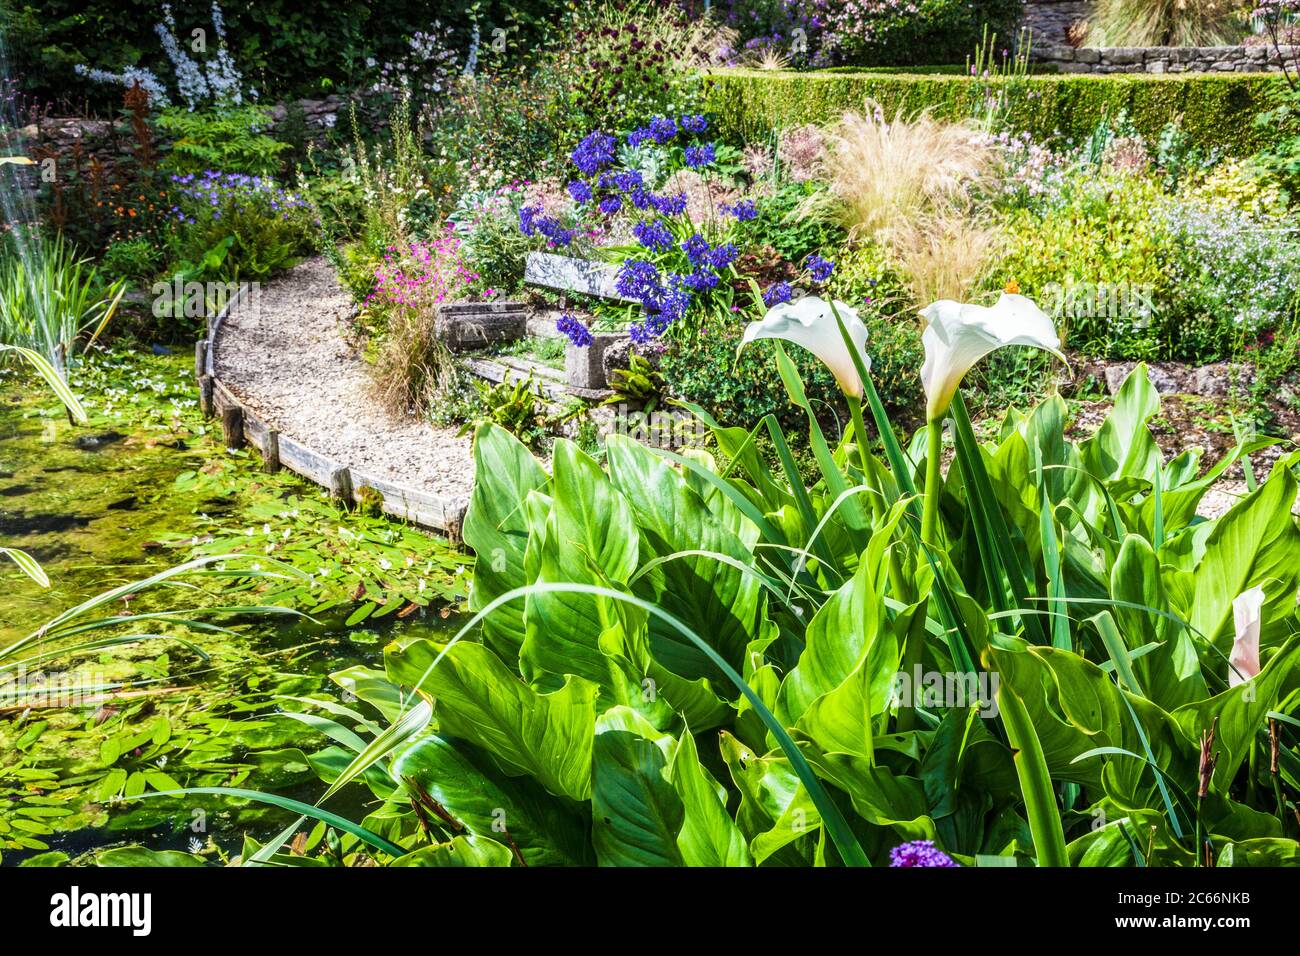 Camino de grava y asientos entre la exuberante vegetación alrededor de un estanque ornamental jardín. Foto de stock